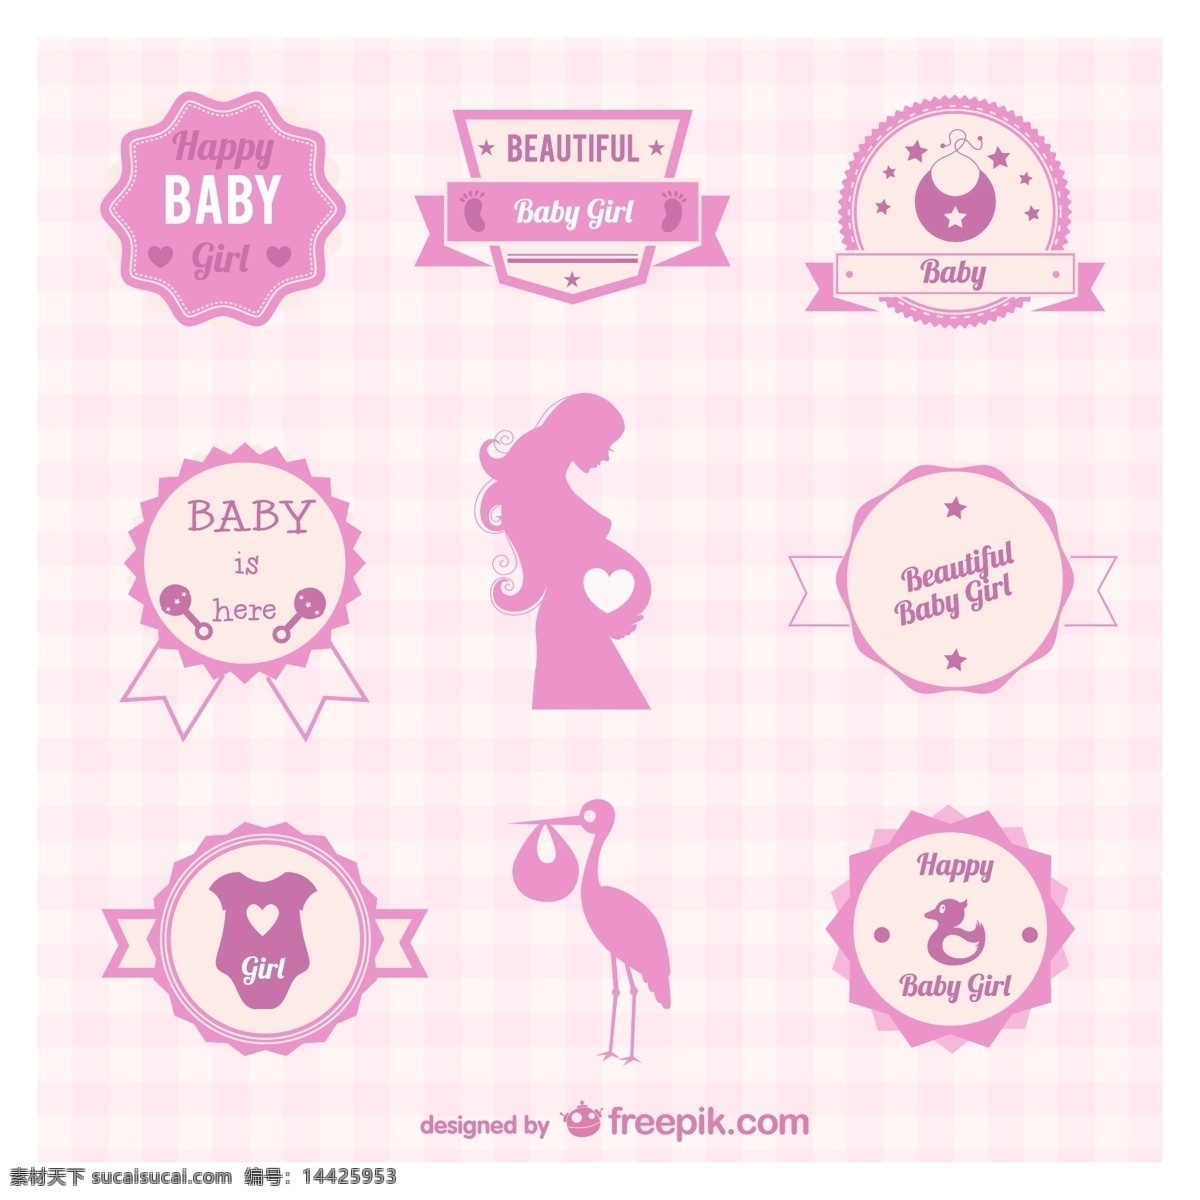 迎 婴 元素 标签 ai格式 粉色 矢量图 婴儿 孕妇 矢量 迎婴 送子鹤